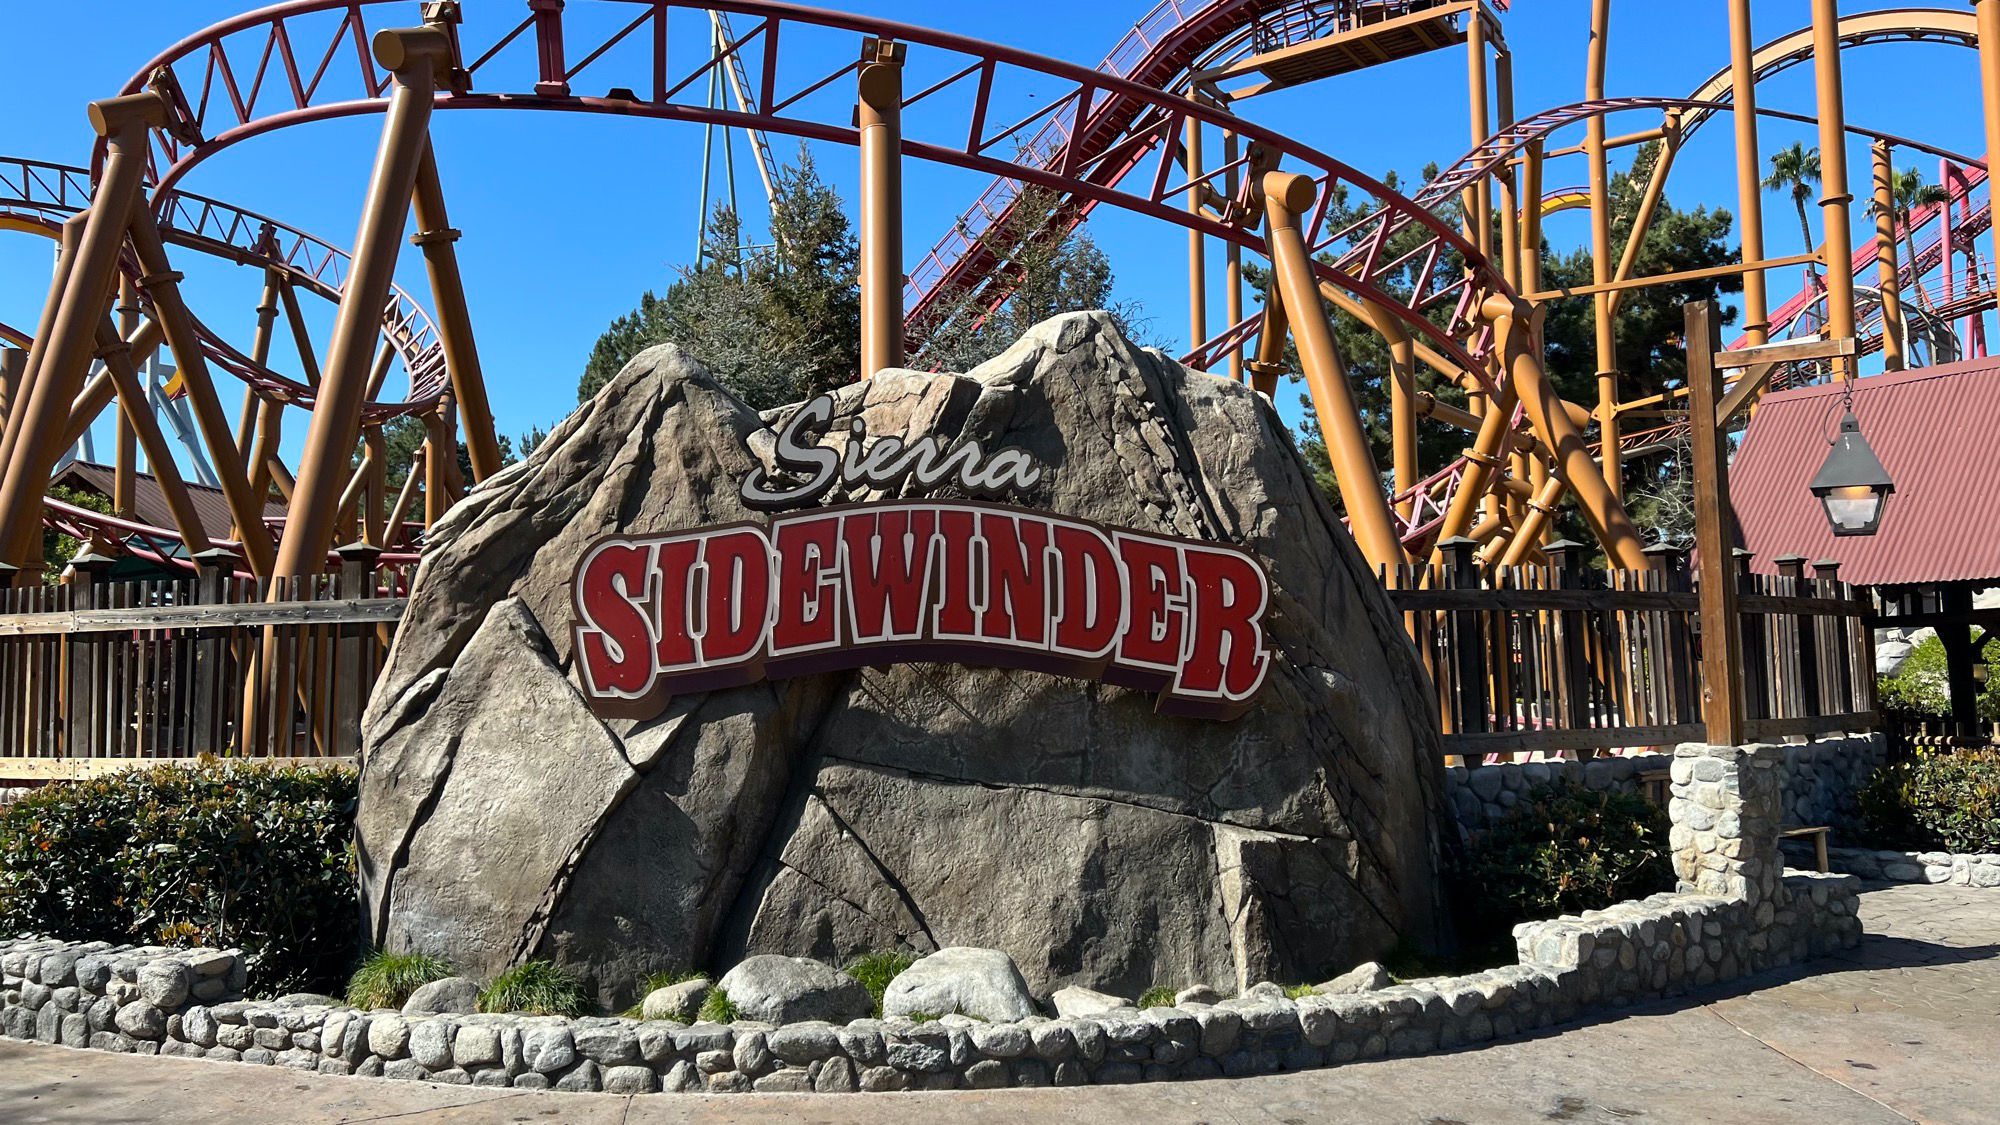 Sierra Sidewinder Sign